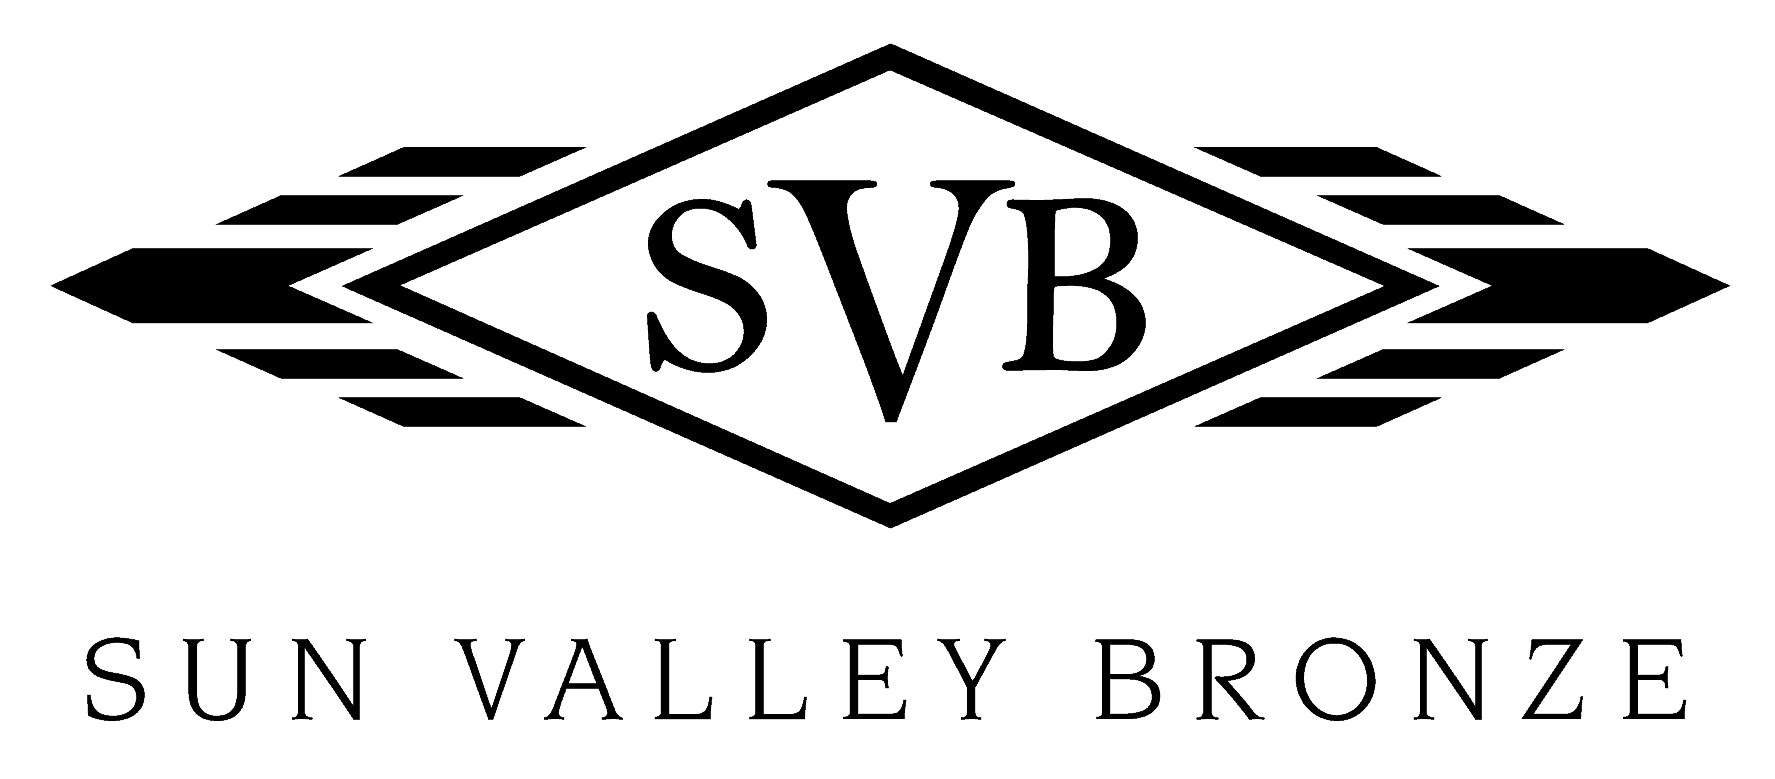 svb-logo-full-black-.png